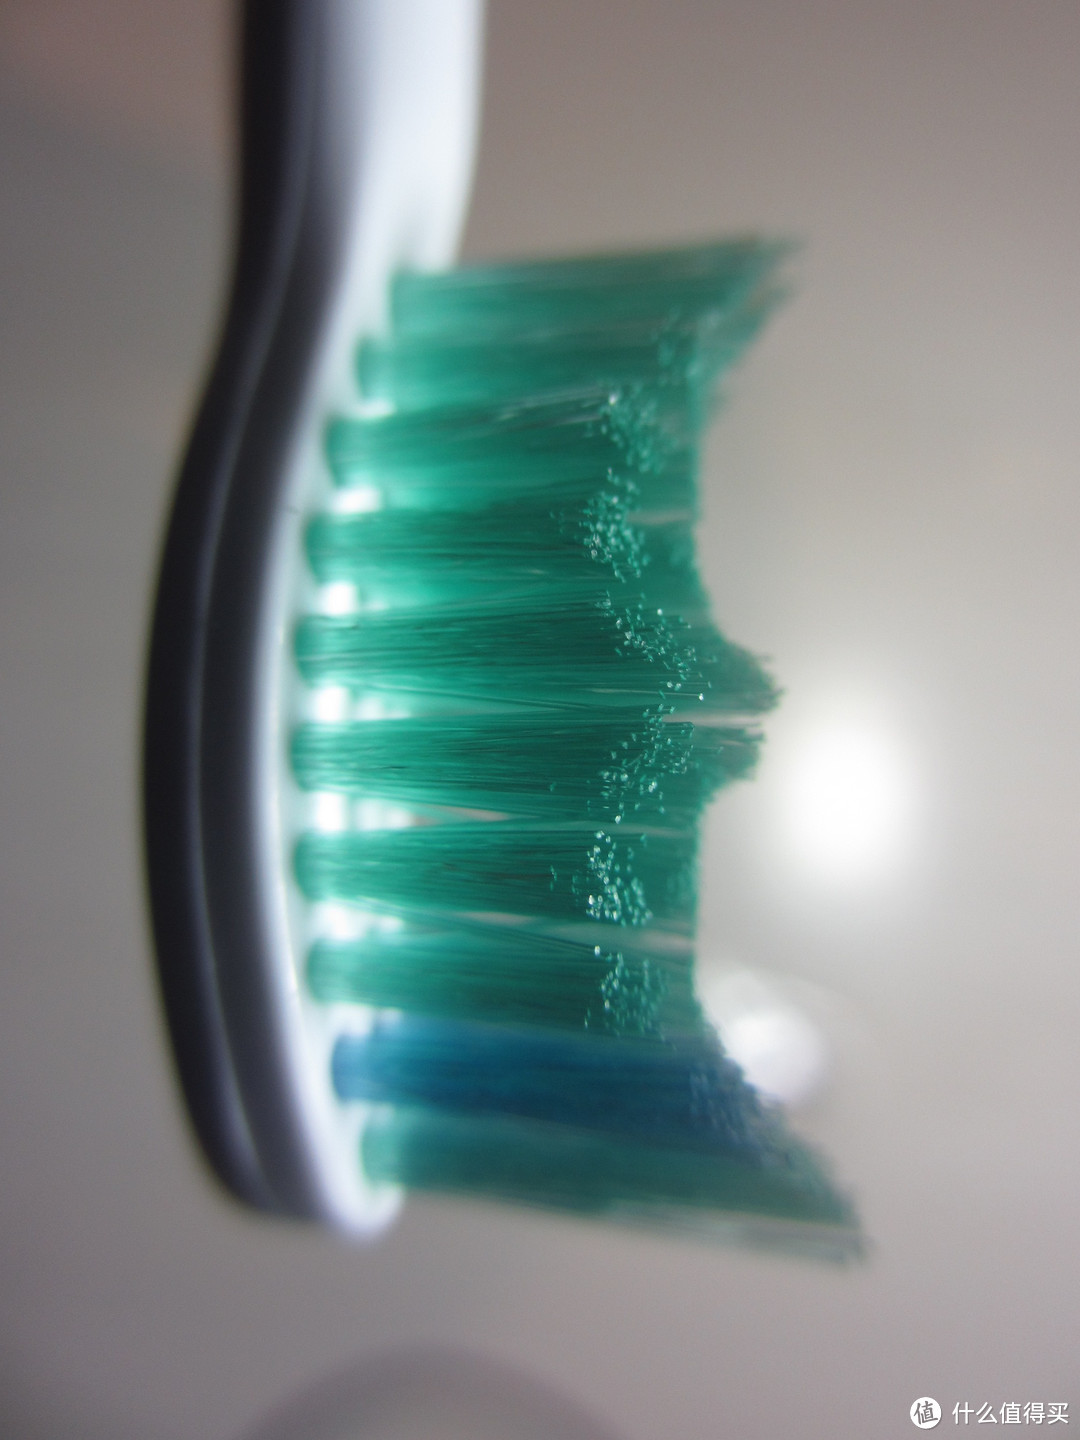 爱护你的牙齿:：PHILIPS 飞利浦 Sonicare HX6730 声波电动牙刷